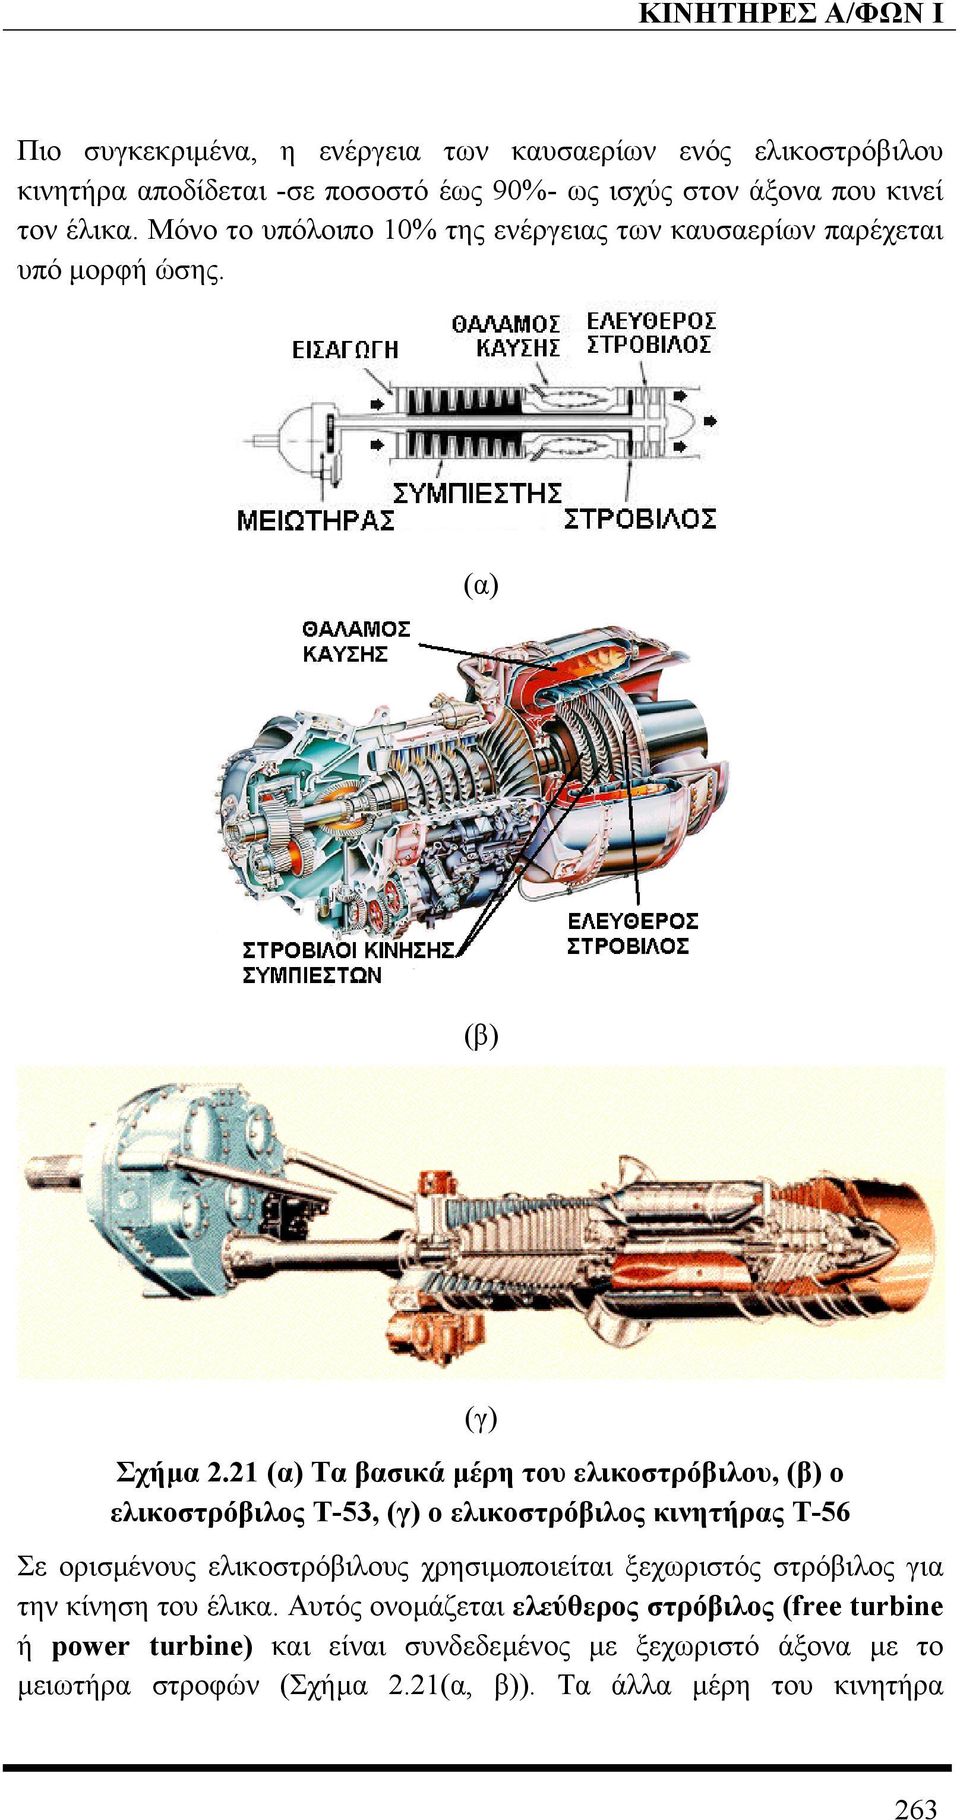 21 (α) Τα βασικά µέρη του ελικοστρόβιλου, (β) ο ελικοστρόβιλος Τ-53, (γ) ο ελικοστρόβιλος κινητήρας Τ-56 Σε ορισµένους ελικοστρόβιλους χρησιµοποιείται